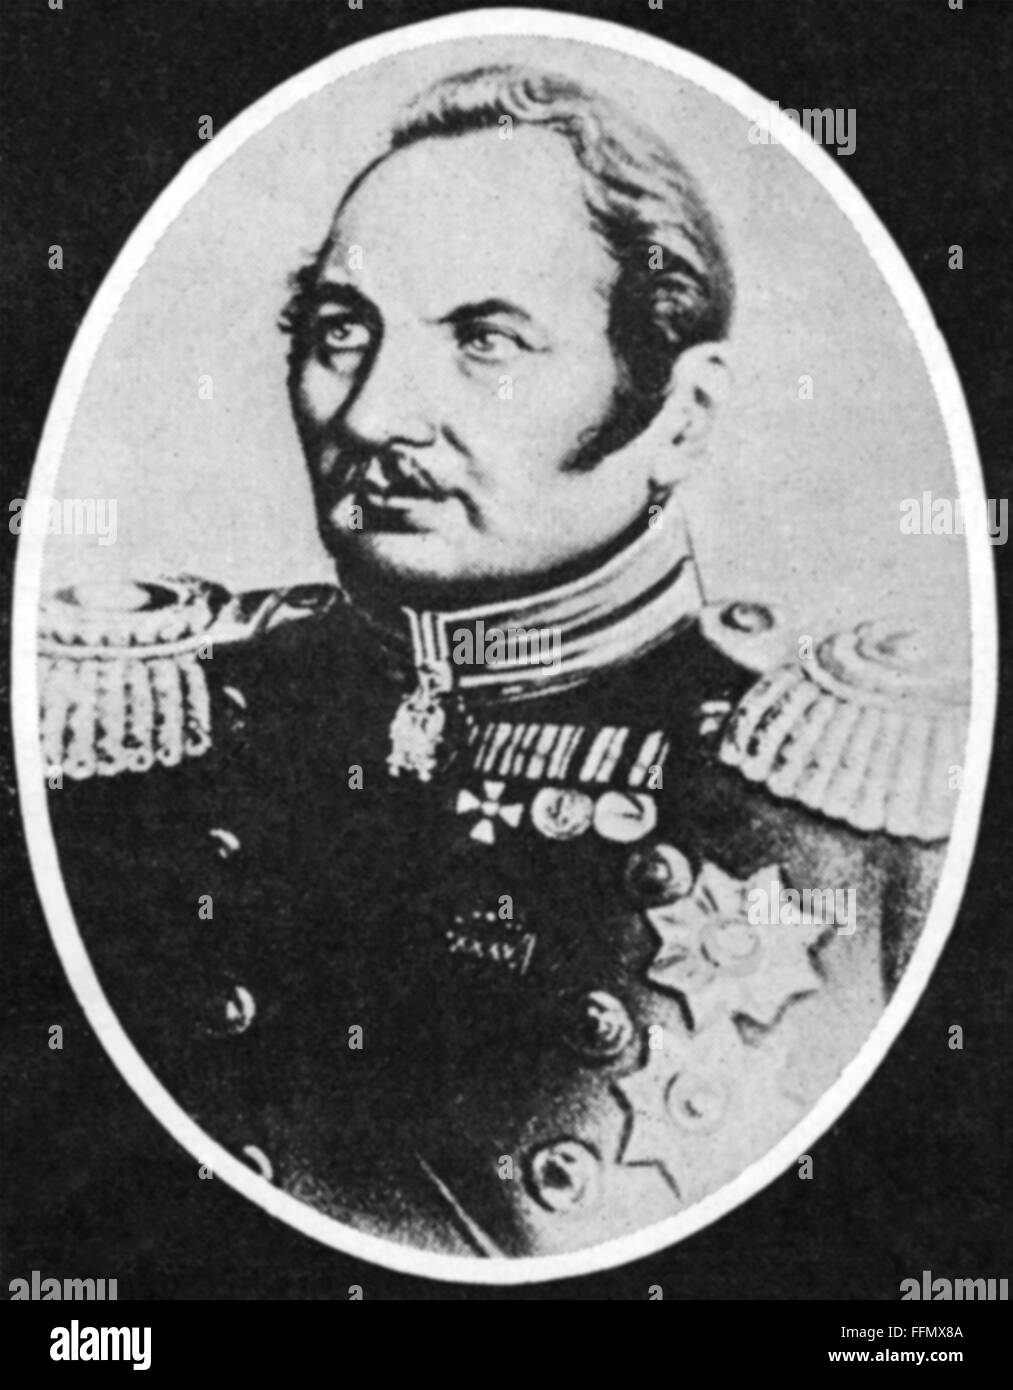 Bellingshausen, Fabian Gottliebe von, 20.9.278 - 25.1.1852, russischer Seefahrer und arktischer Entdecker, Porträt, 19. Jahrhundert, Stockfoto